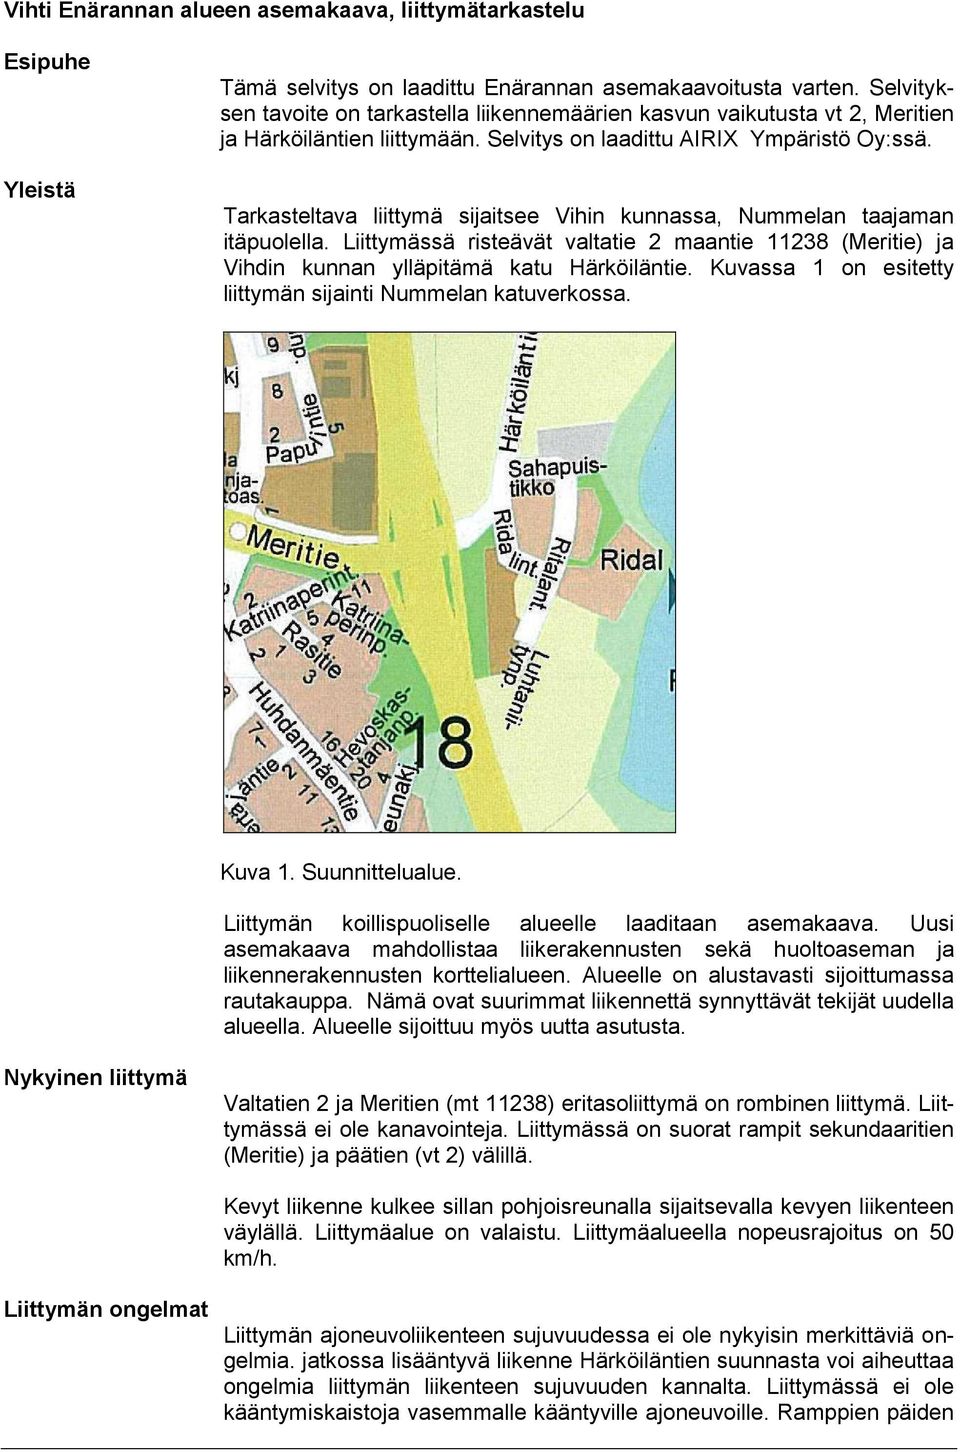 Tarkasteltava liittymä sijaitsee Vihin kunnassa, Nummelan taajaman itäpuolella. Liittymässä risteävät valtatie 2 maantie 11238 (Meritie) ja Vihdin kunnan ylläpitämä katu Härköiläntie.